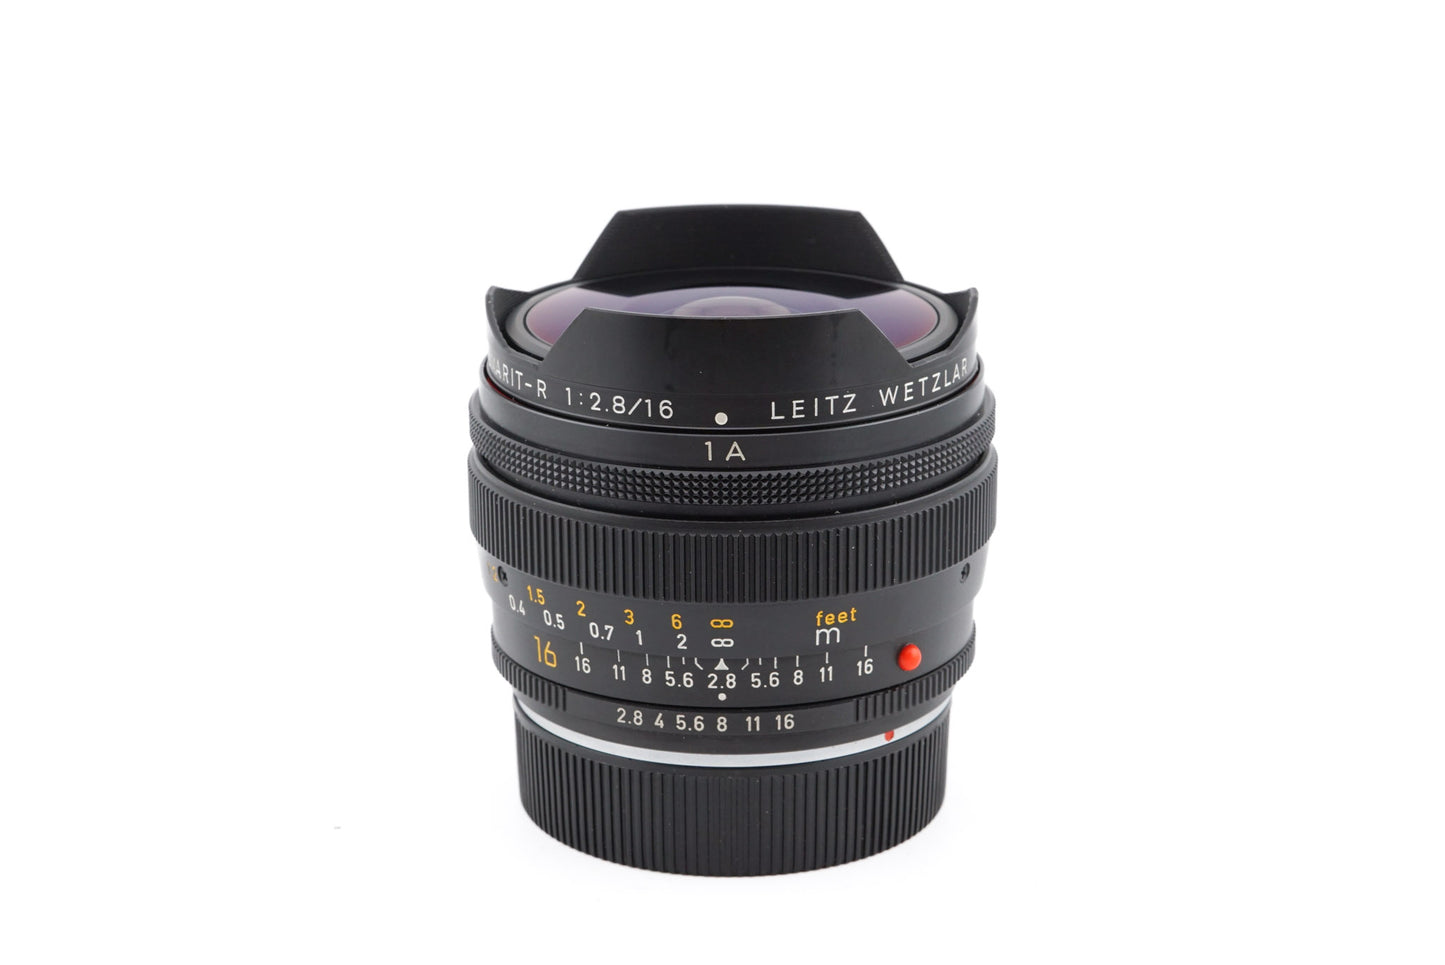 Leica 16mm f2.8 Fisheye-Elmarit-R (3-Cam) - Lens